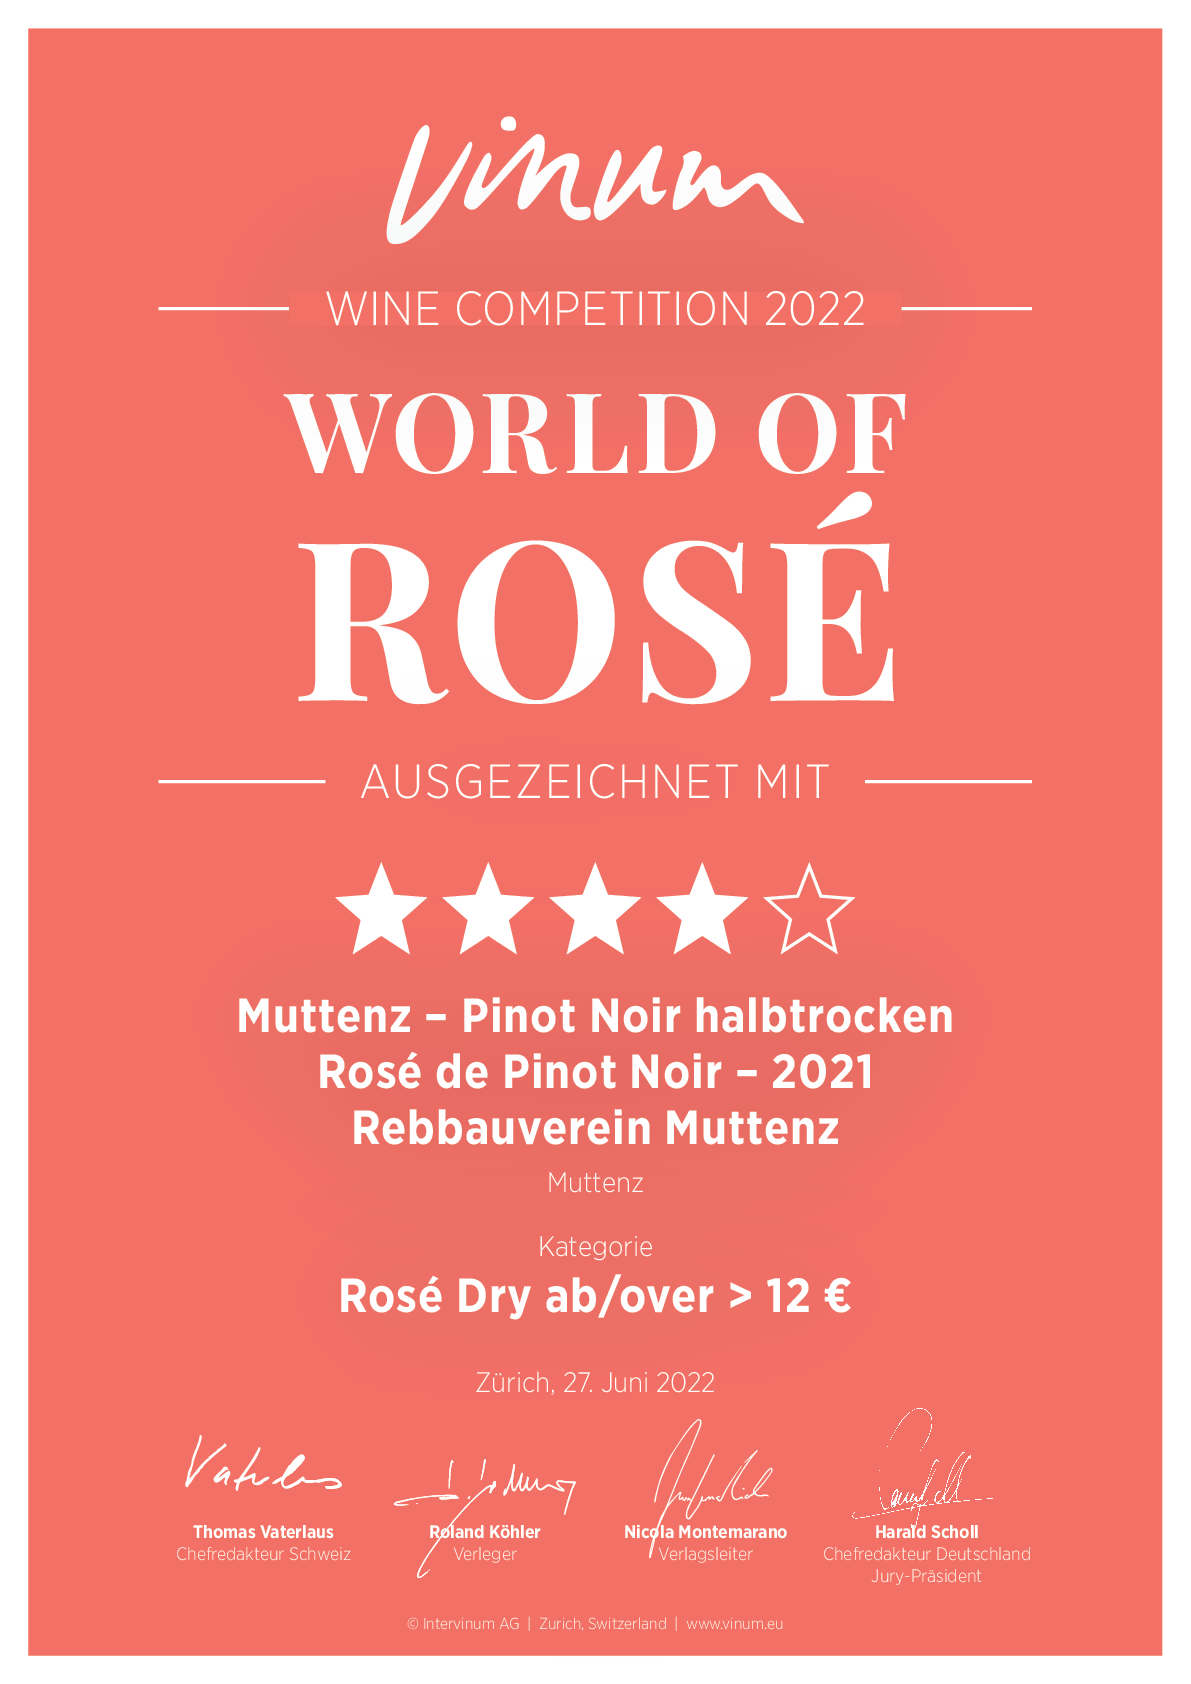 World of Rose_Urkunde_A4_2022-1_164-001